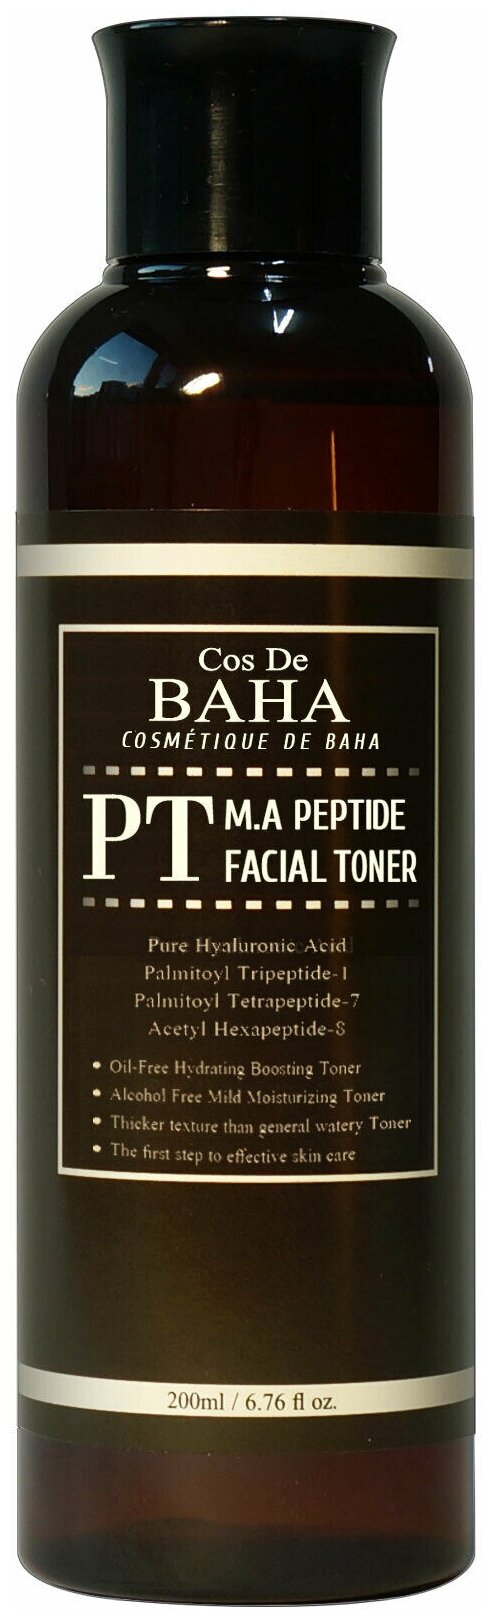 COS DE BAHA Тонер PT M.A Peptide Facial